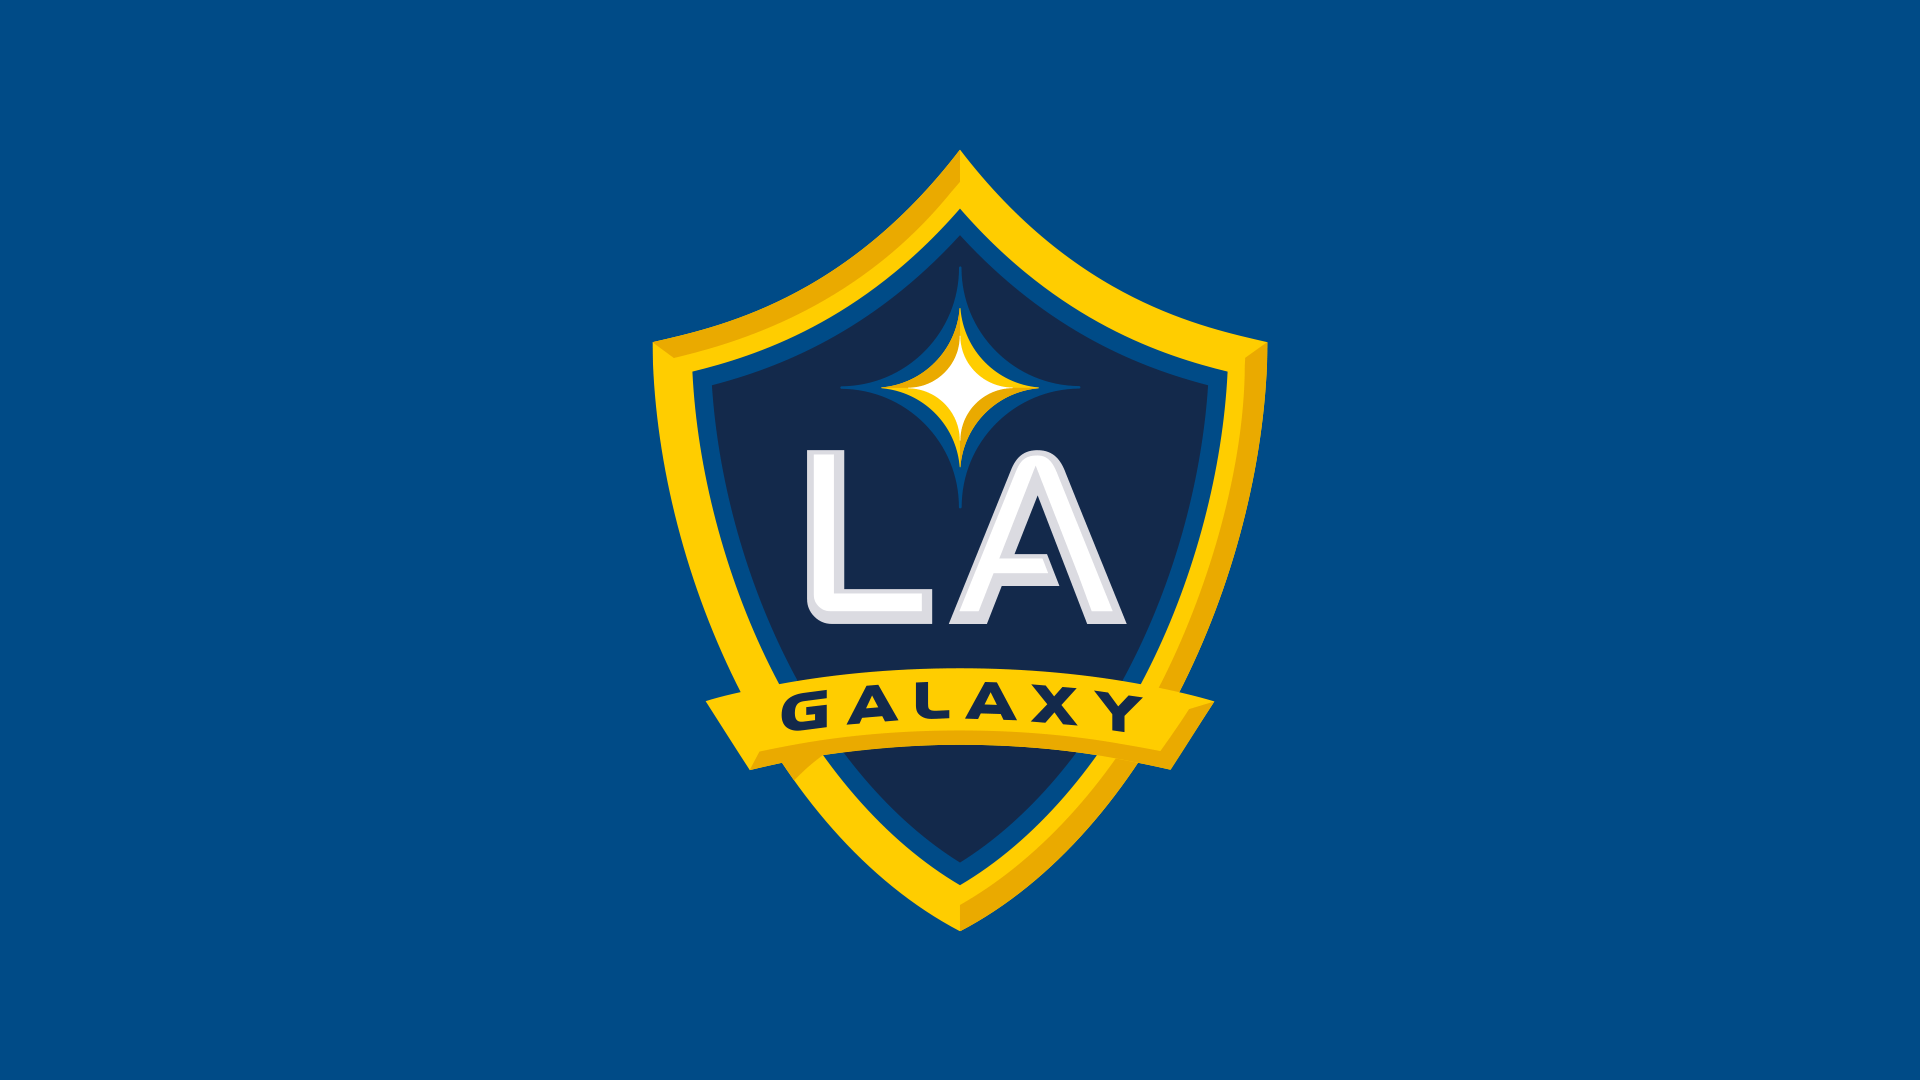 La Galaxy Schedule 2022 La Galaxy 2022 Season Preview | Mlssoccer.com